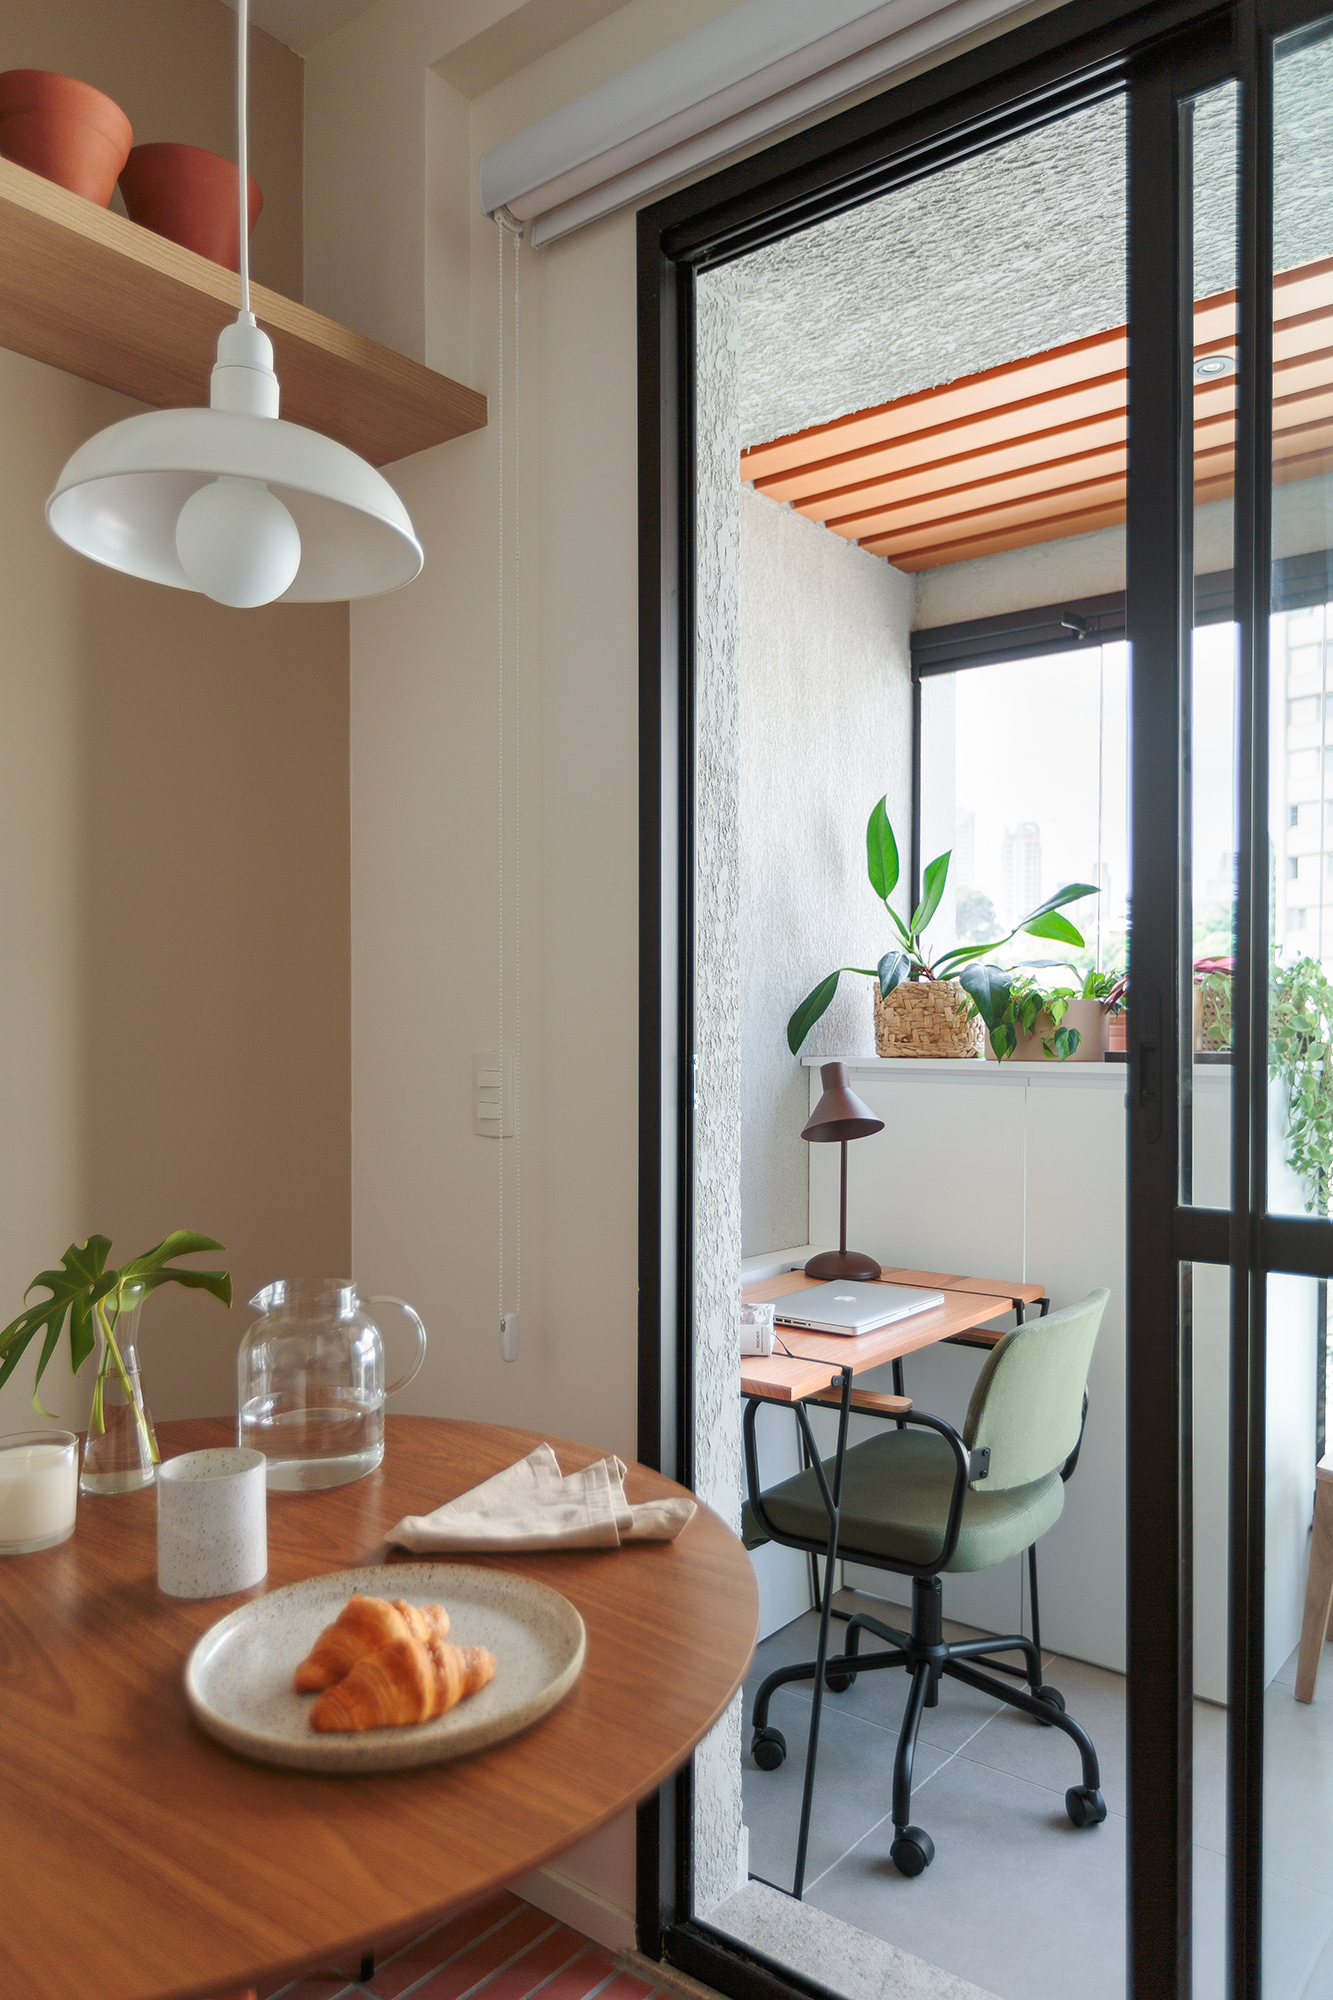 Piso de terracota e plantas criam frescor em apê de apenas 20 m². Projeto Estúdio Maré. Na foto, sala de jantar com mesa redonda e home office.